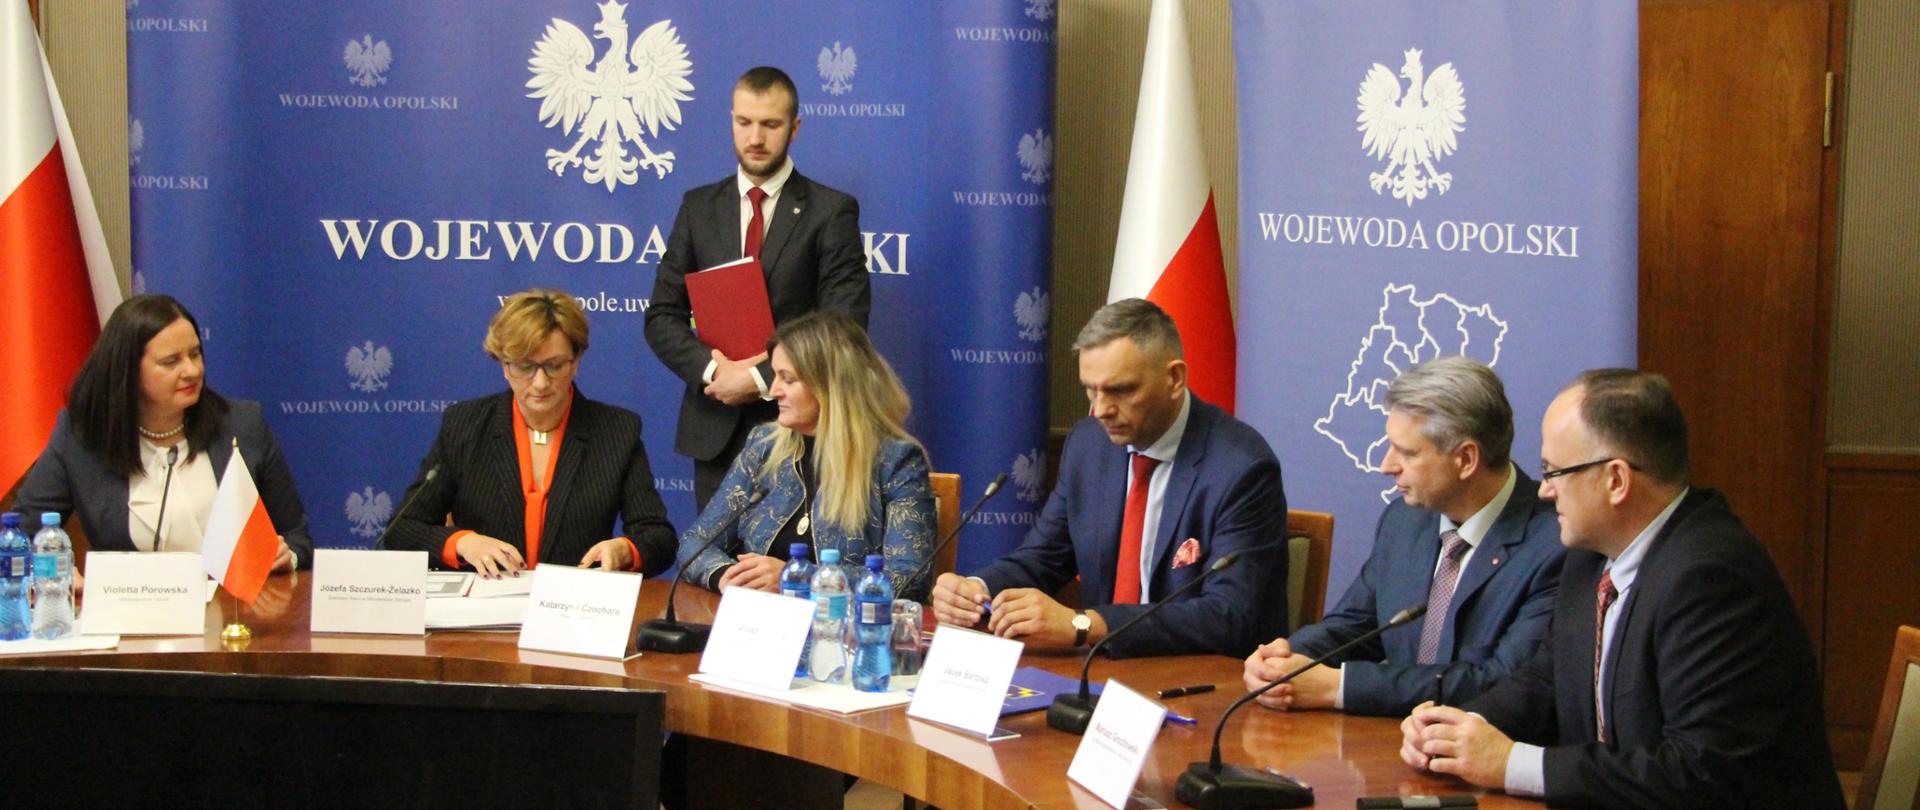 Podpisanie umów na unijne dofinansowanie w Opolskim Urzędzie Wojewódzkim. Przy stole siedzi sześć osób, wśród nich wiceminister zdrowia Józefa Szczurek-Żelazko oraz wicewojewoda Violetta Porowska.